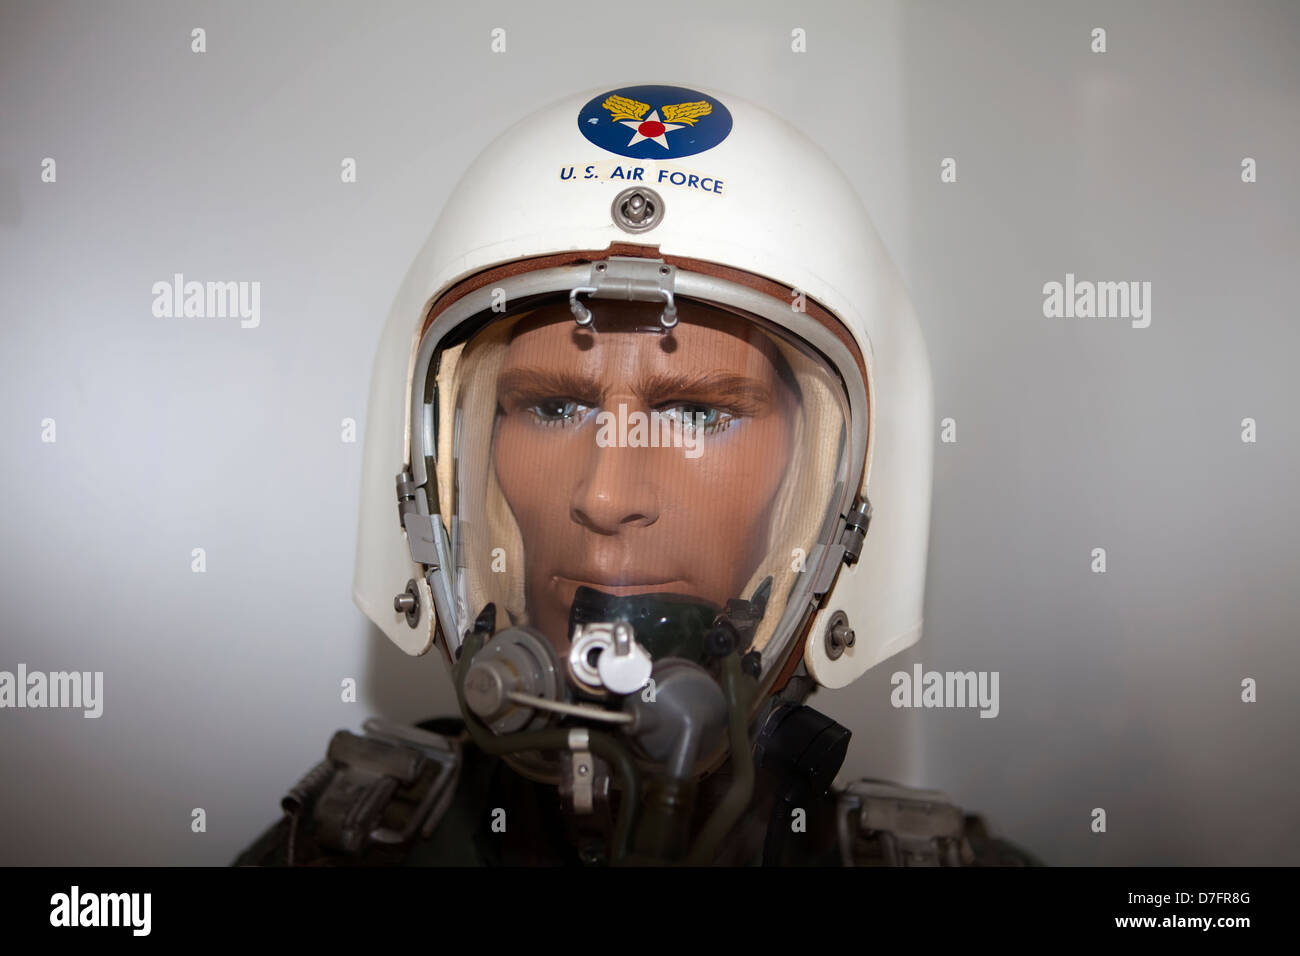 Modello di un pilota da caccia con una pressione suit, US Air Force, Collezione aerei vicino Hermeskeil, Renania-Palatinato, Germania Foto Stock